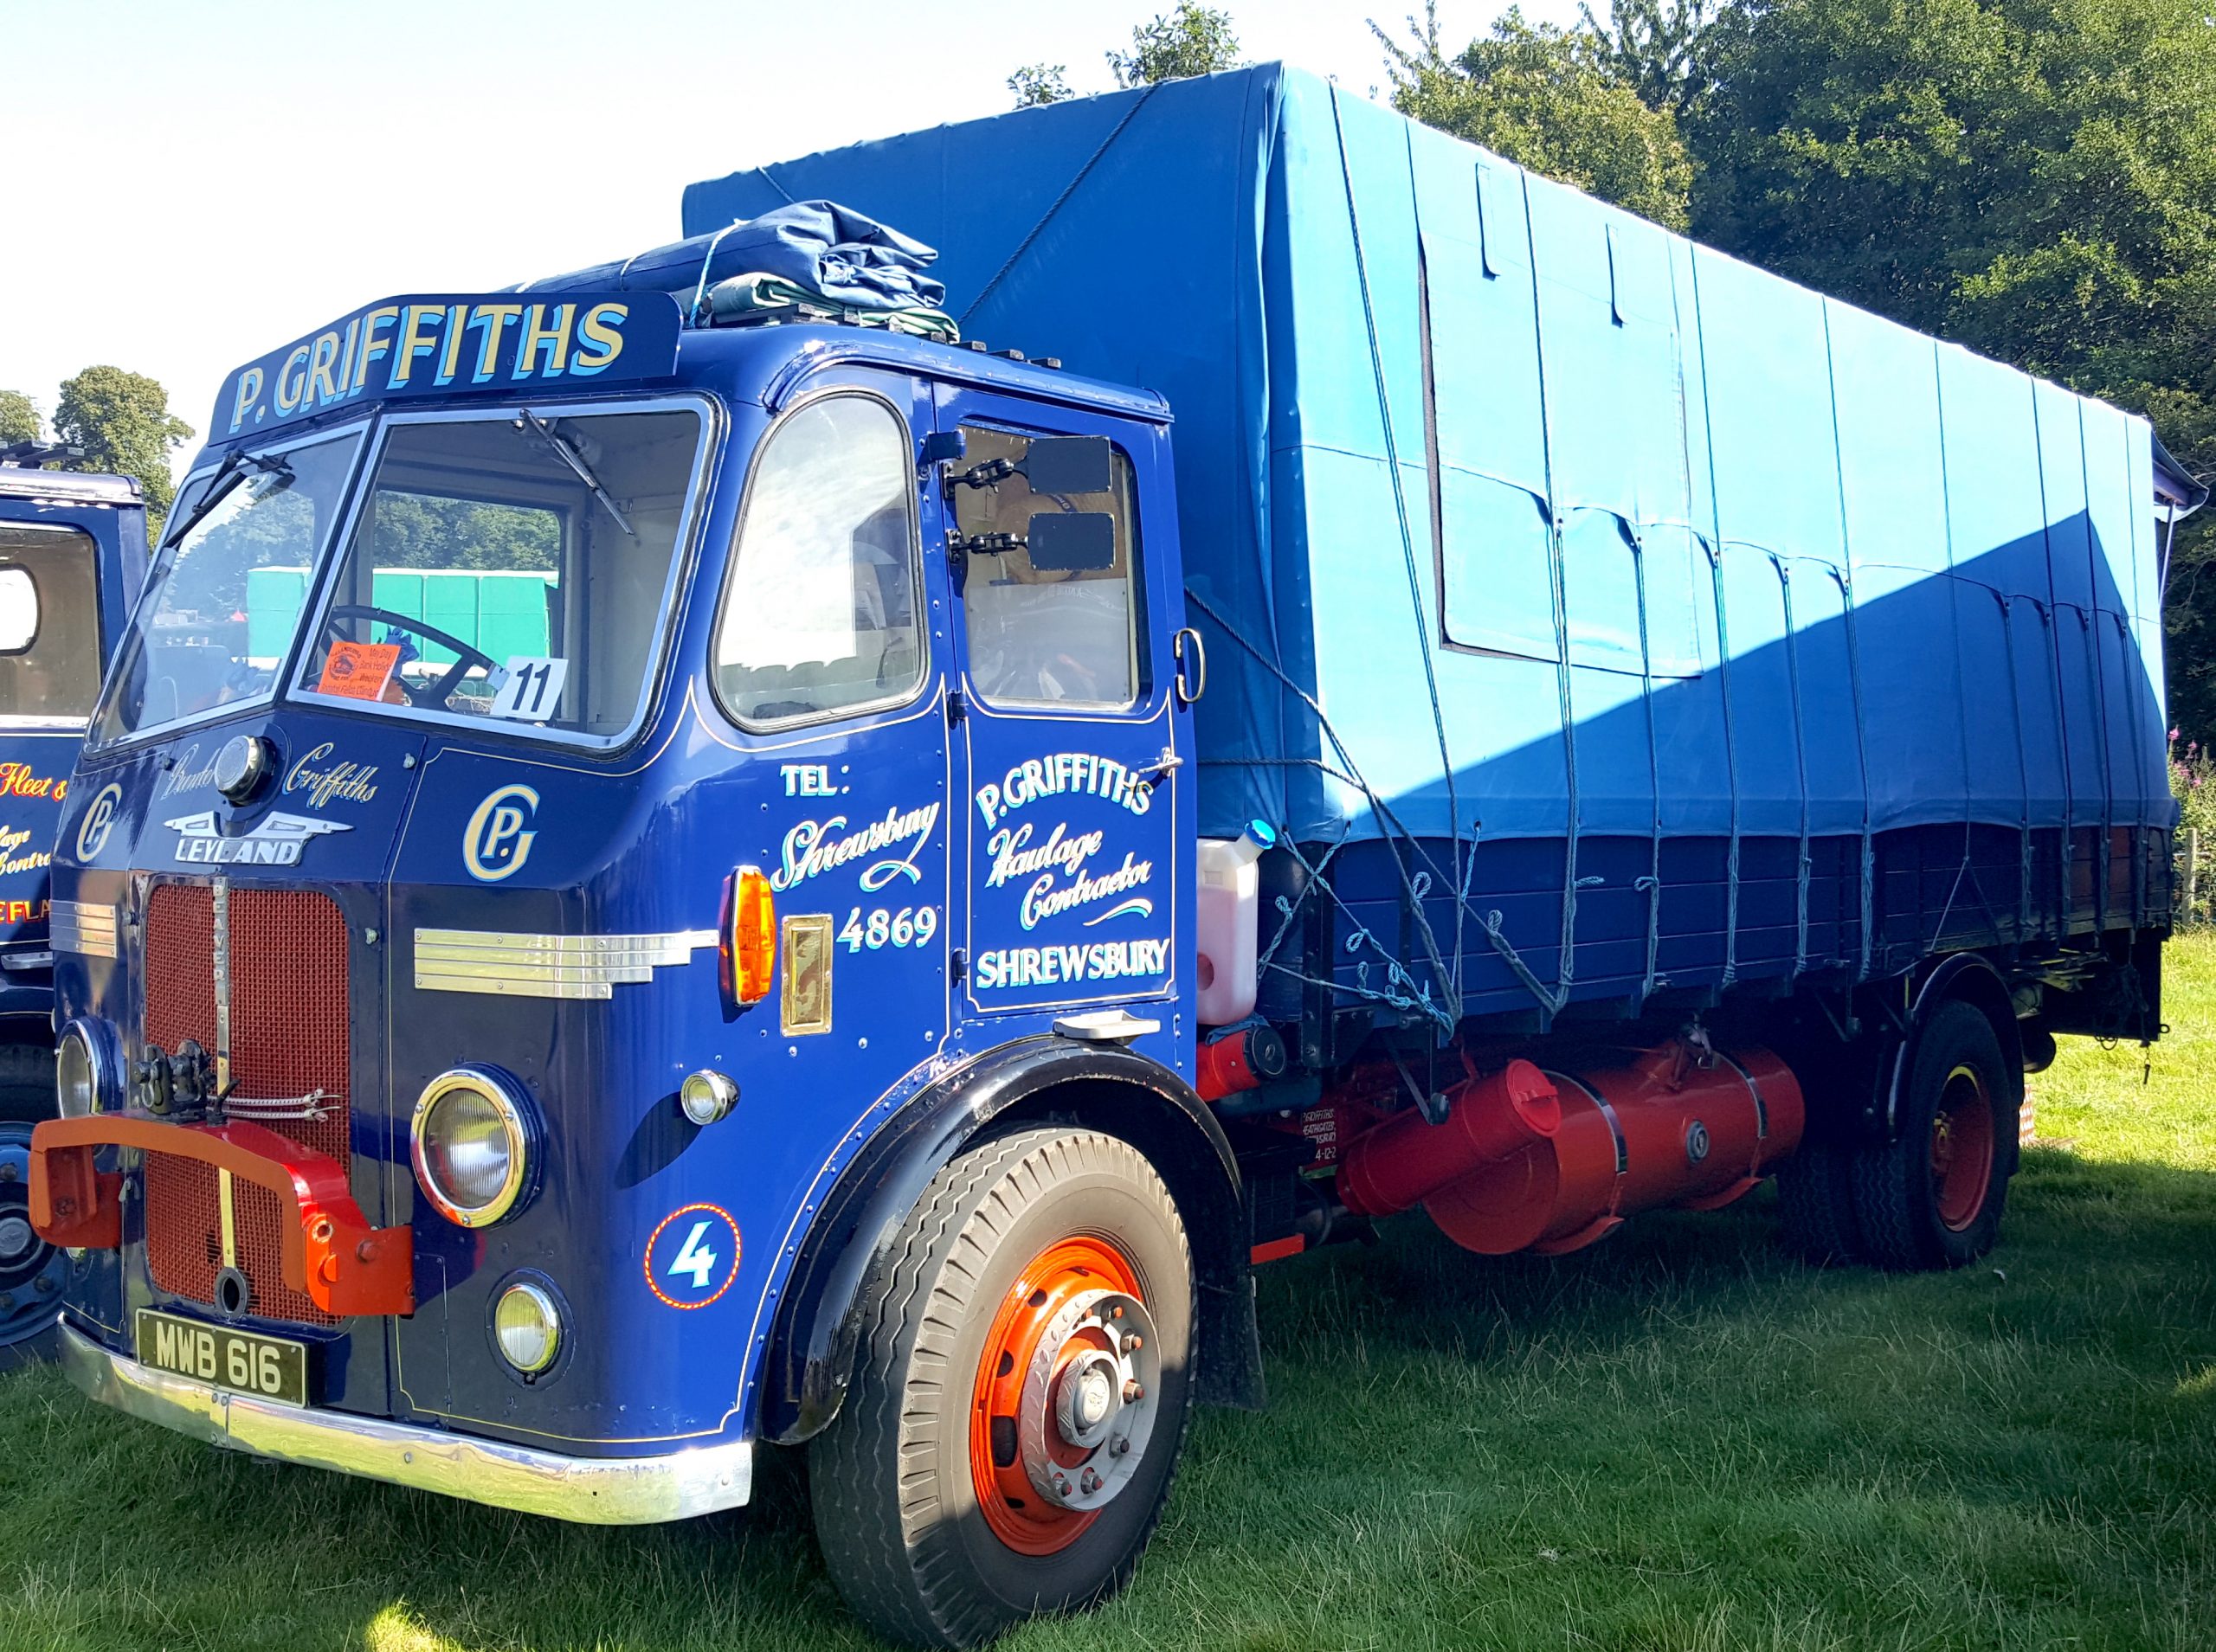 P-Griffiths-Haulage-Shrewsbury-Vintage-Leyland-Truck-scaled